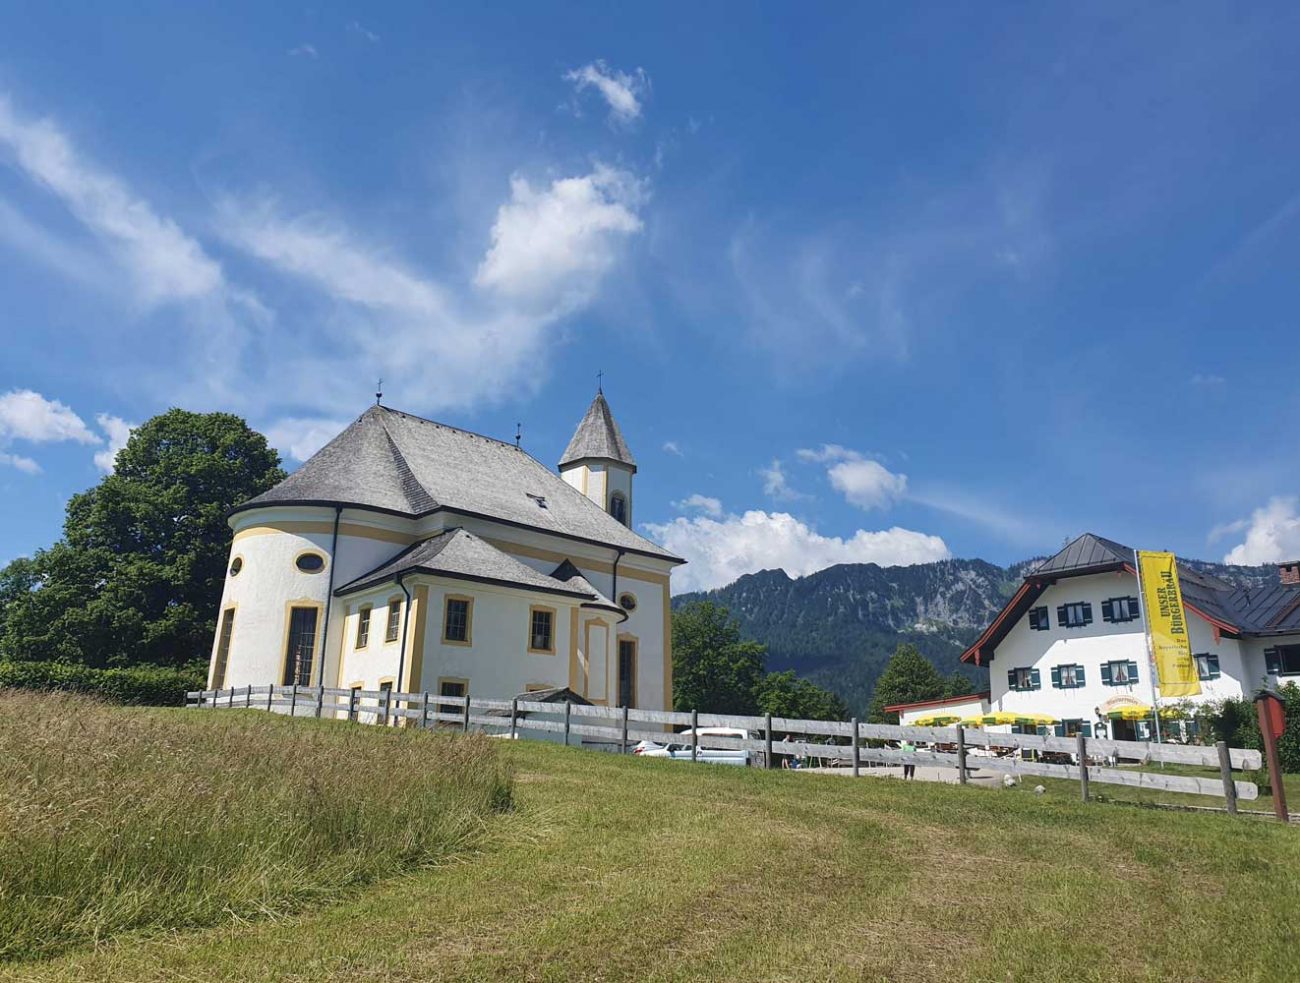 Wandertipp Berchtesgaden